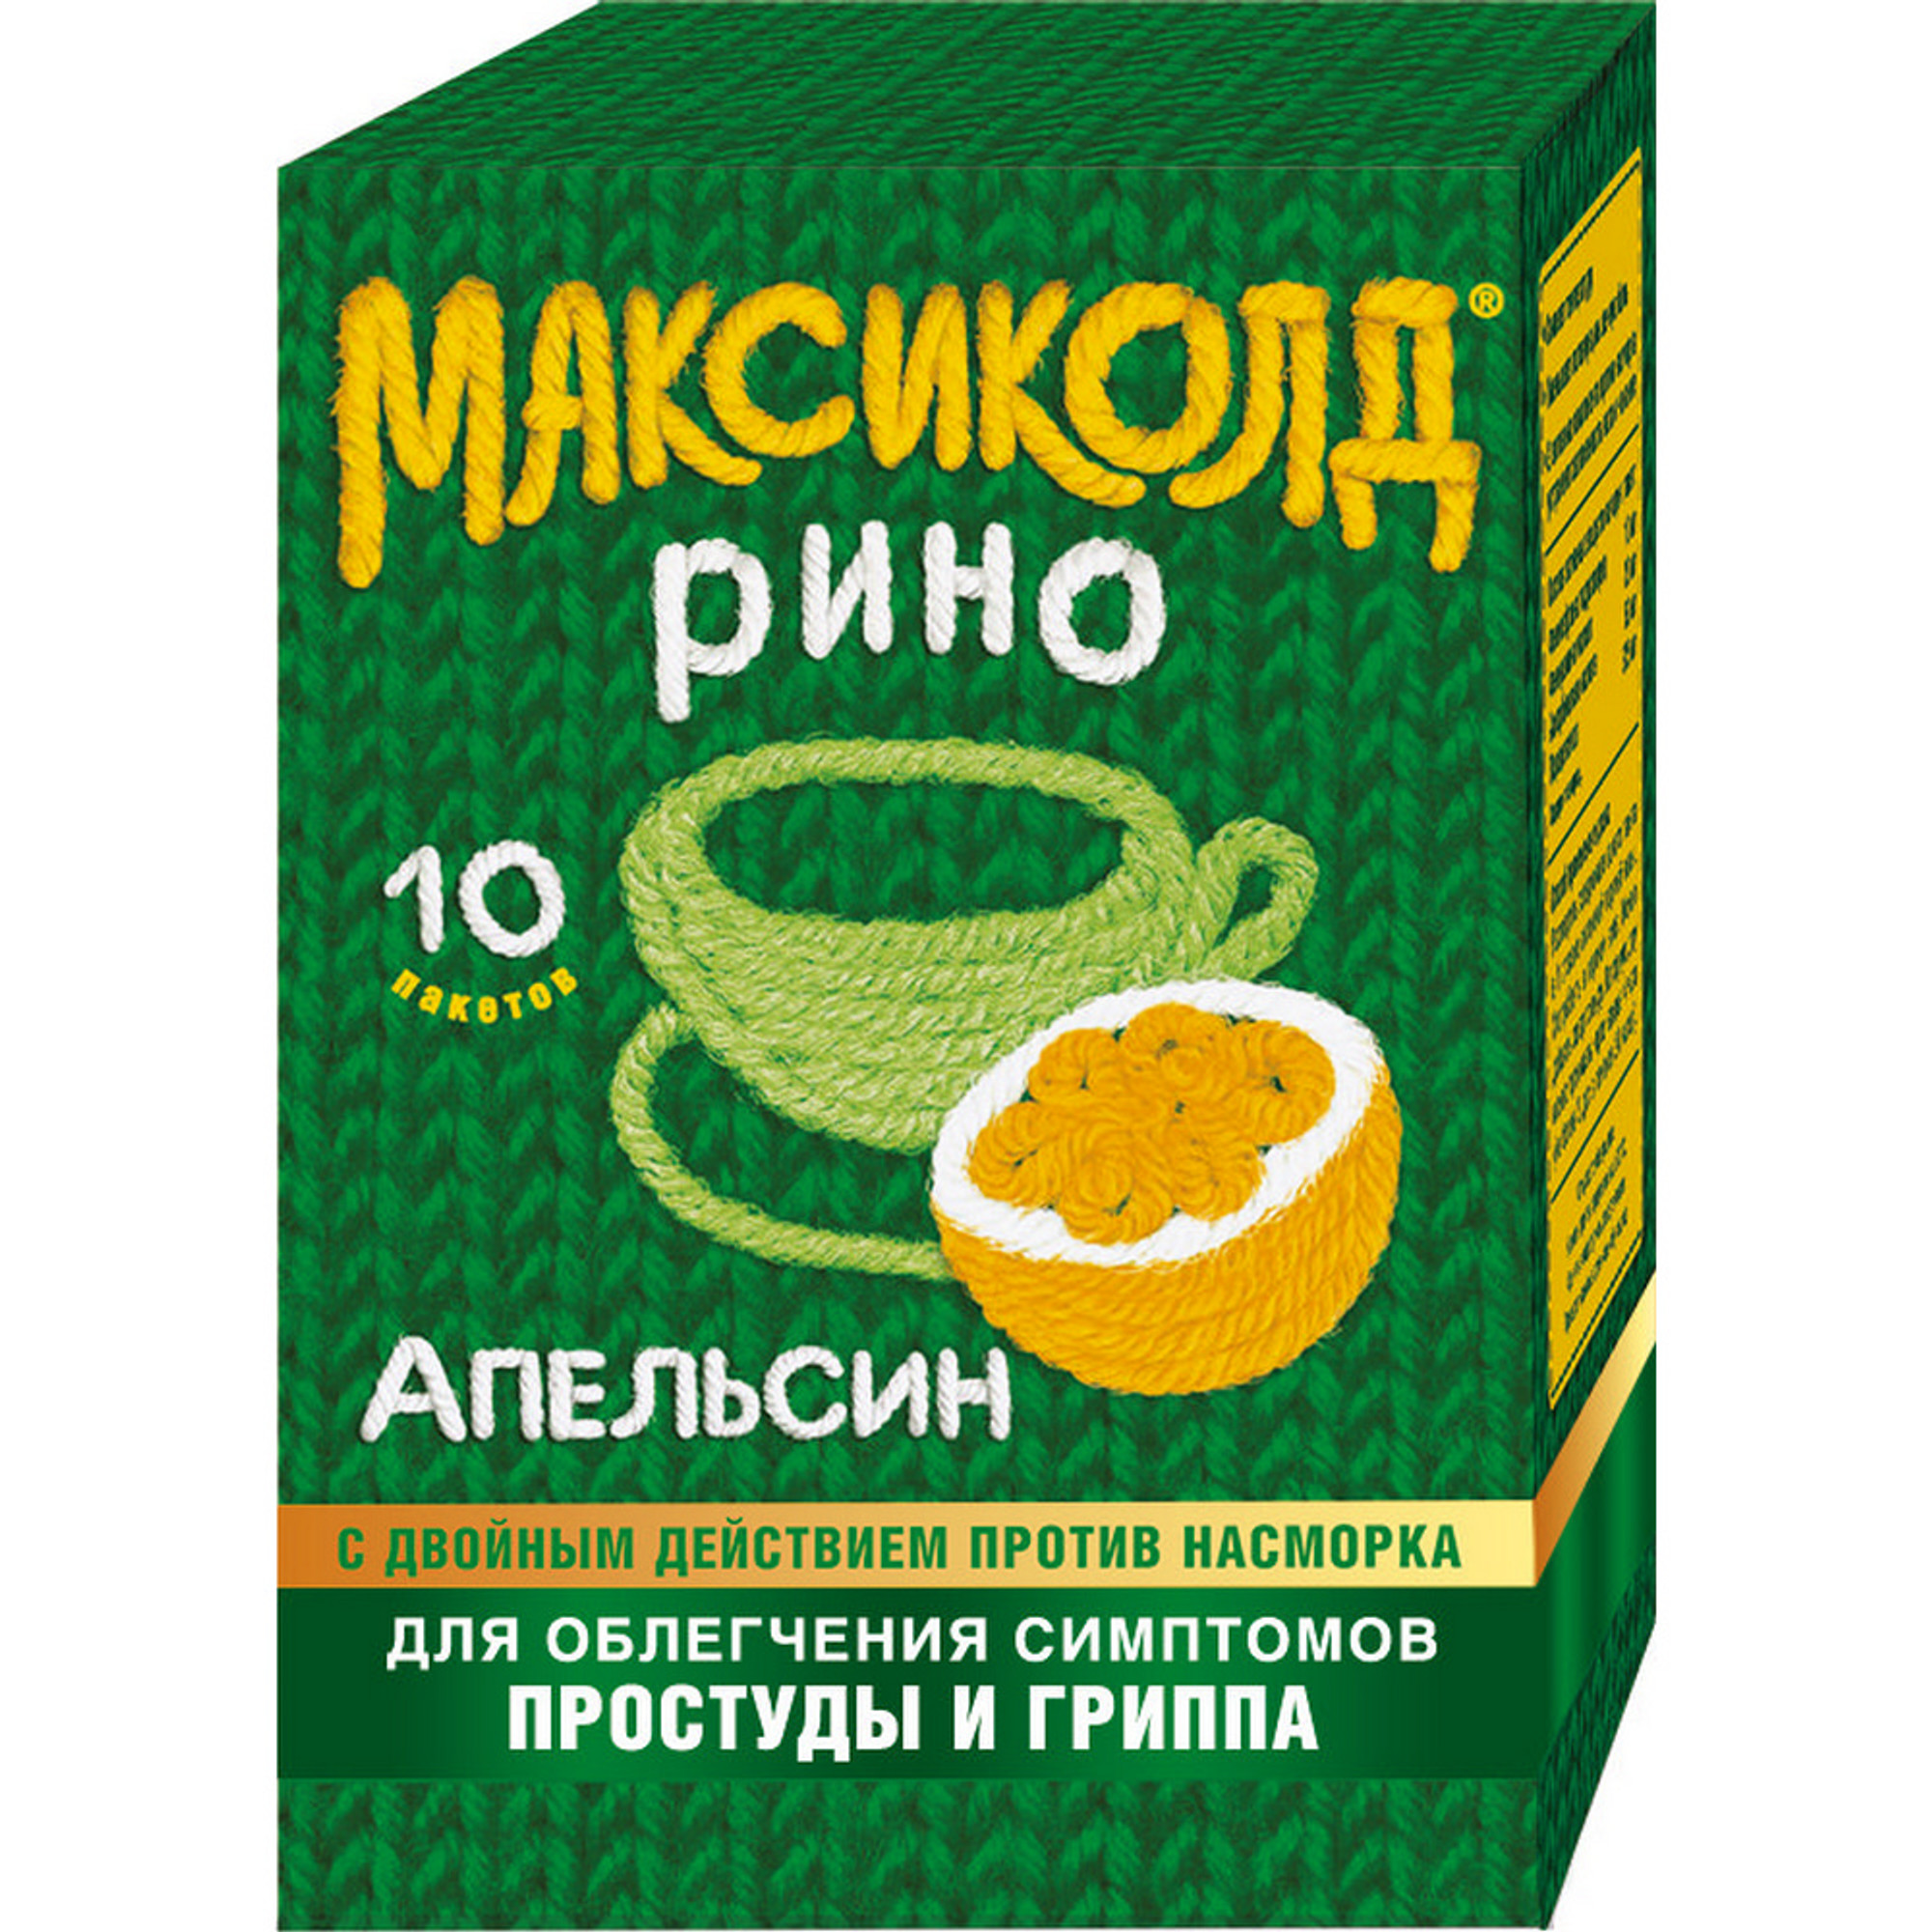 Максиколд Рино, порошок (апельсин), пакетики 15 г, 10 шт. максиколд рино порошок 15 г 10 шт малина